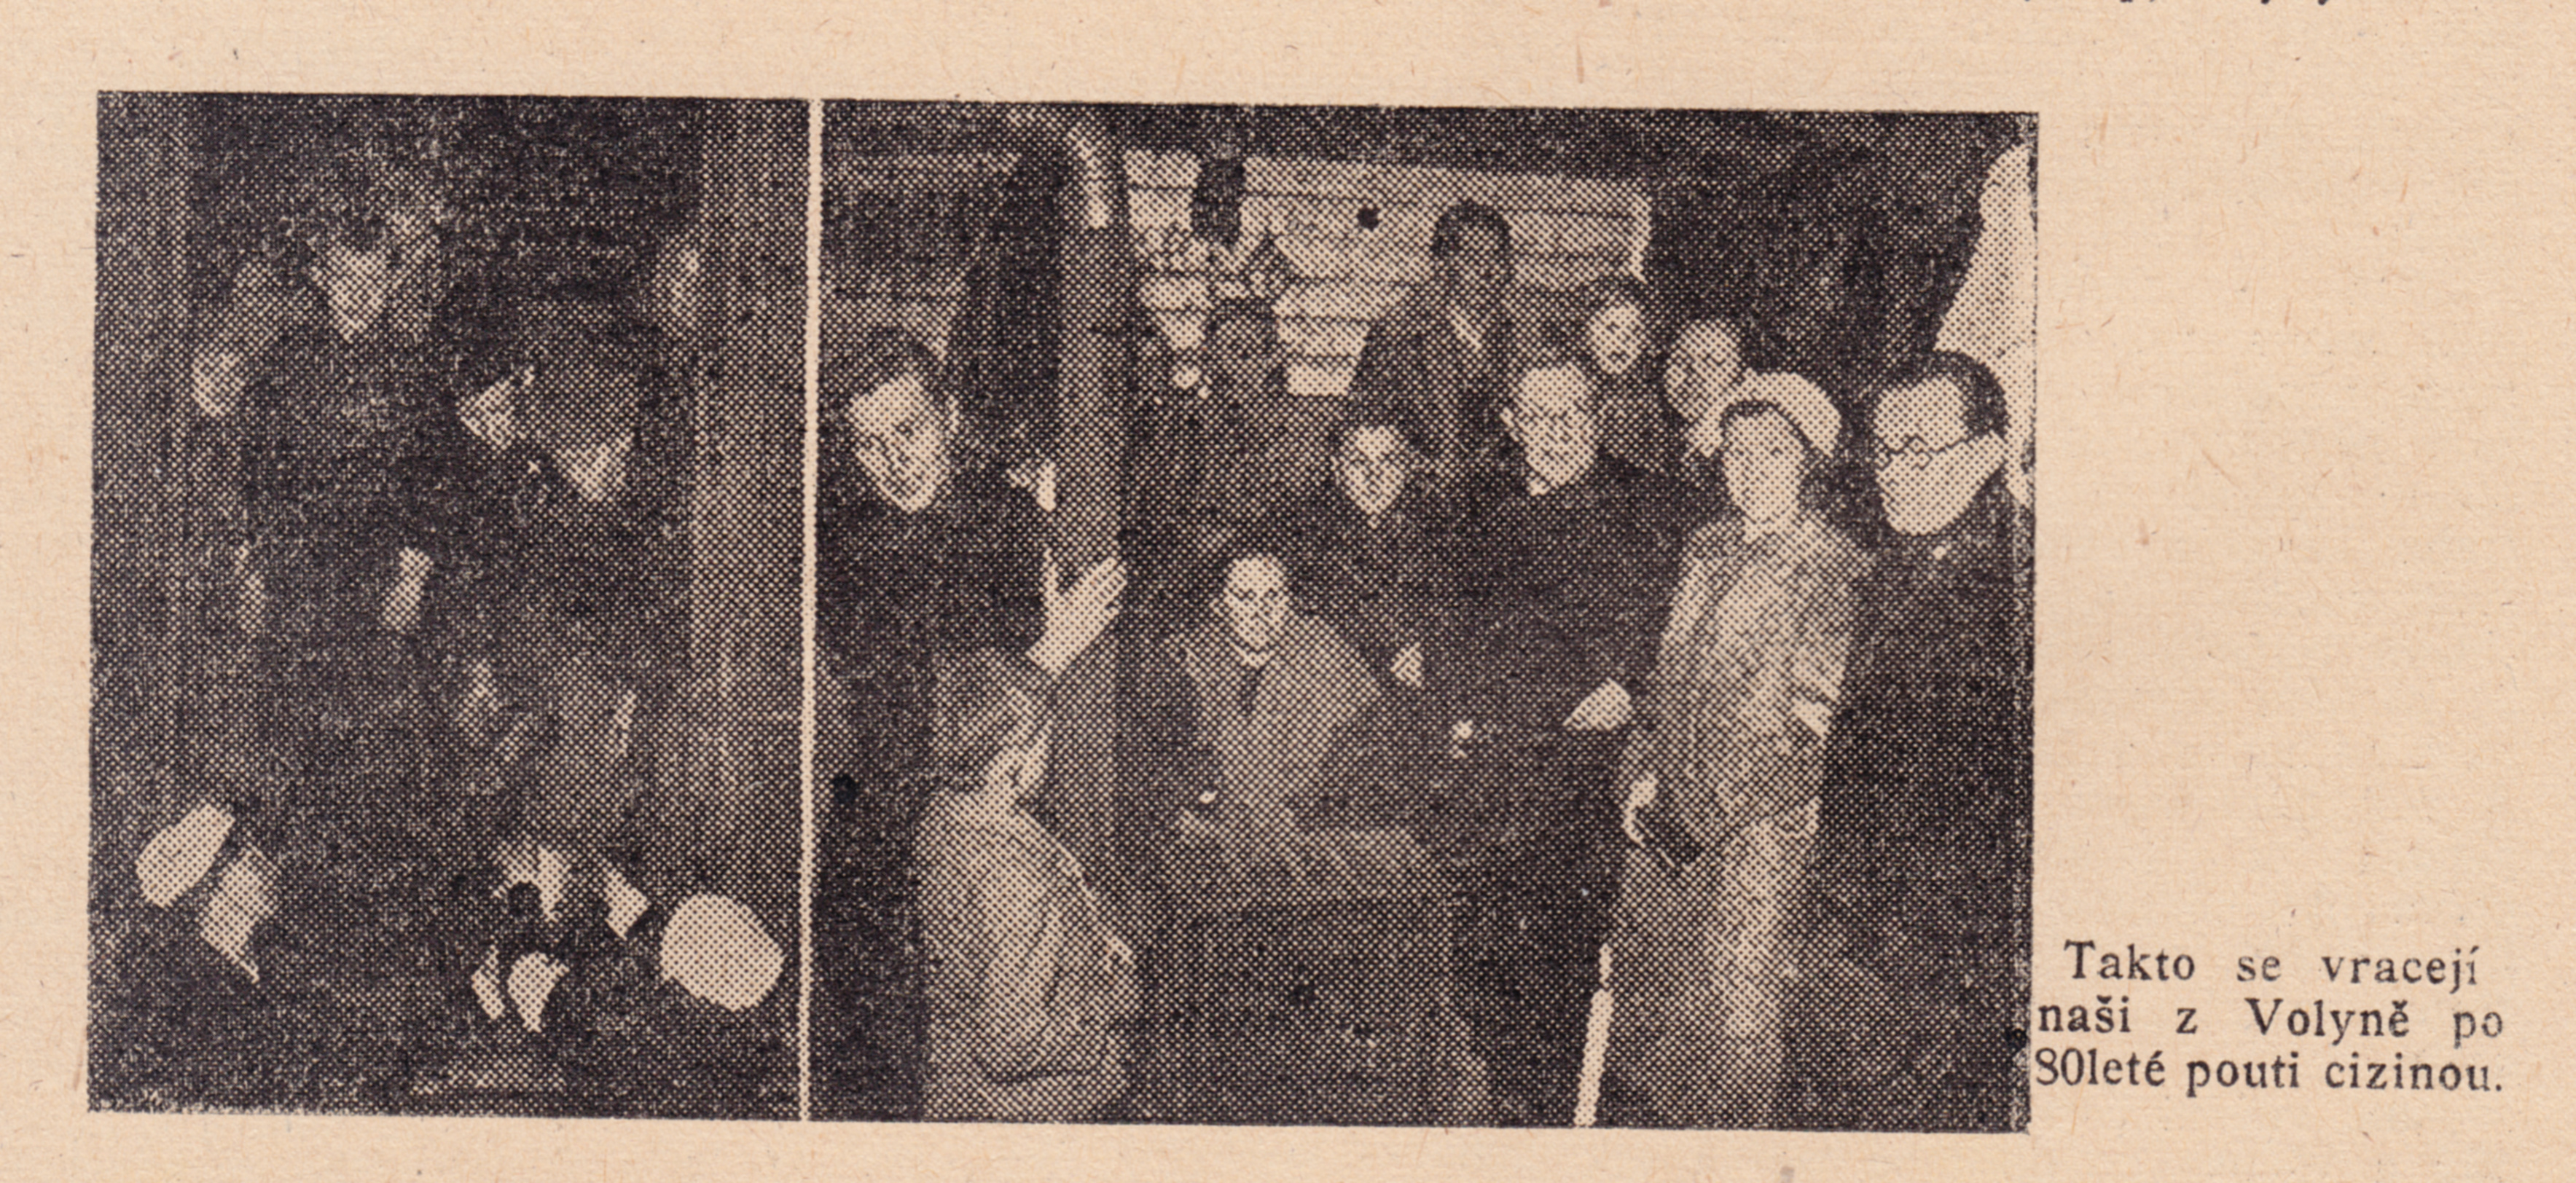 Pohled do nitra jednoho z transportů - Věrná střáž 21.2.1947